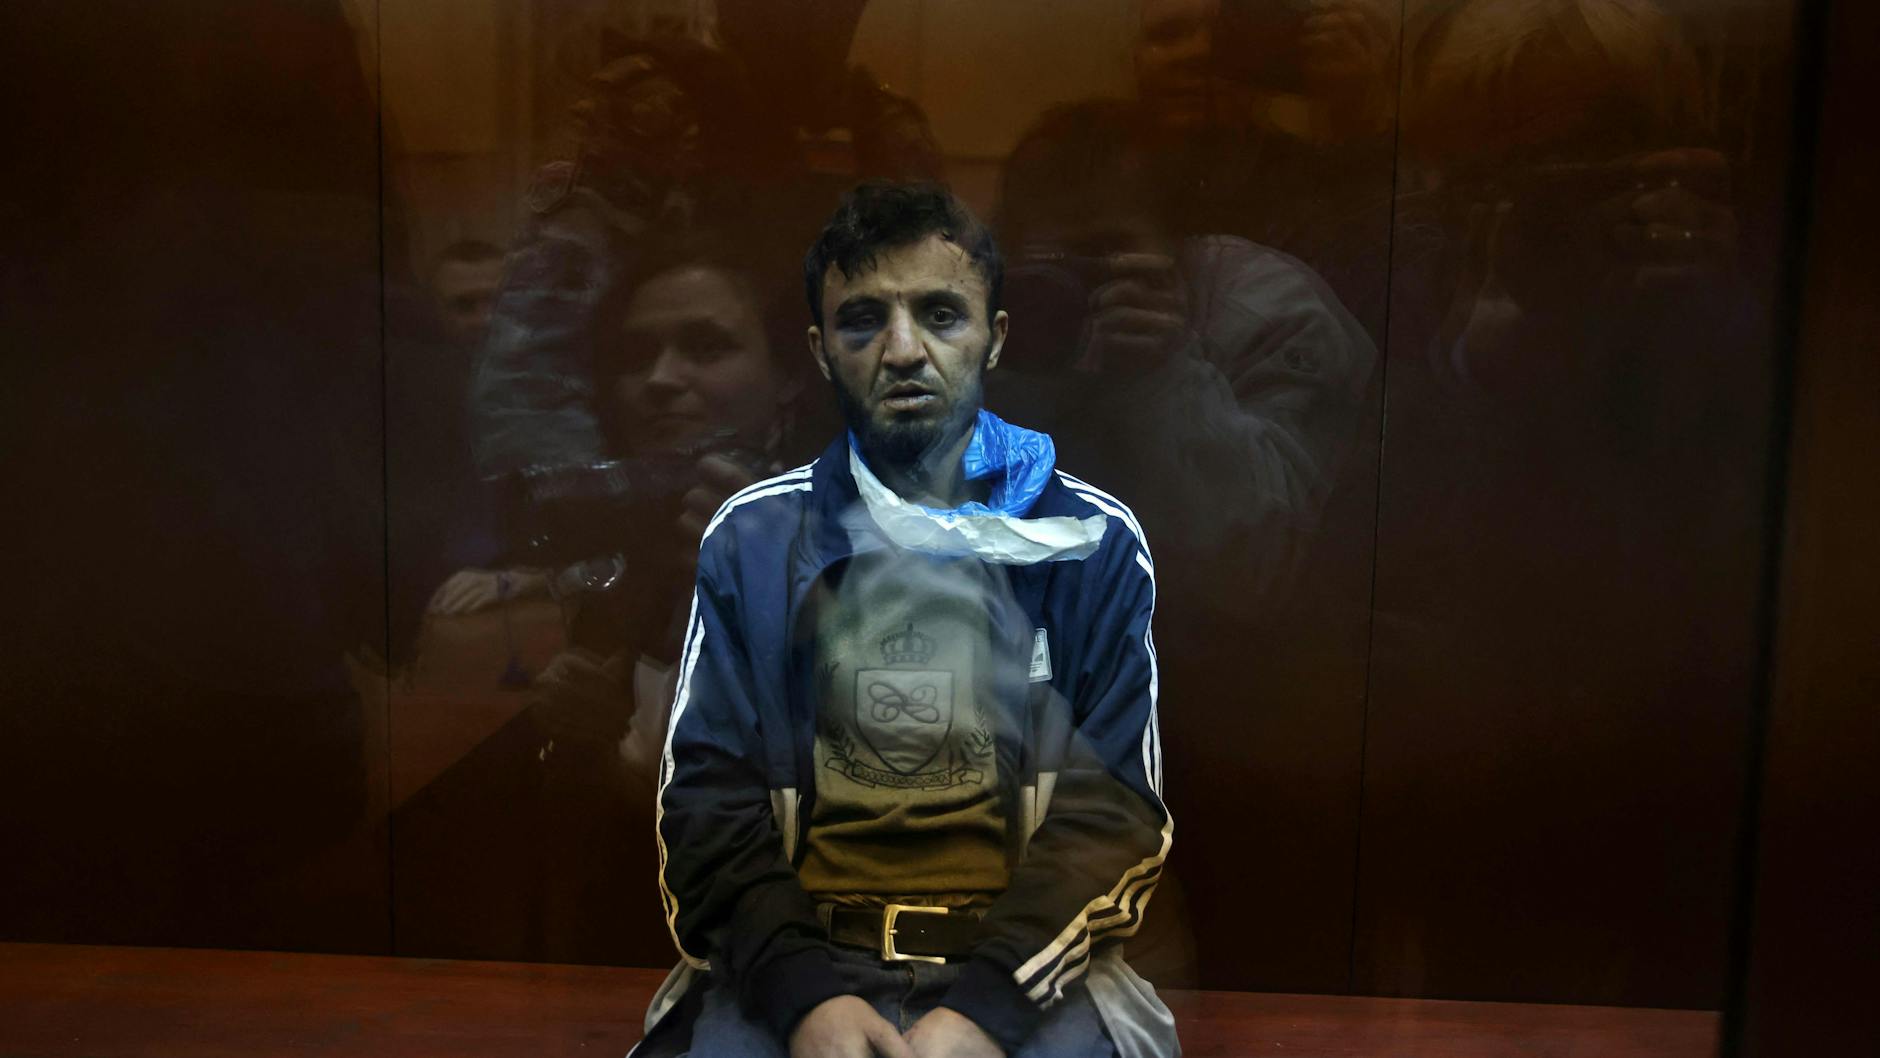 Dalerdjon Barotovich Mirzoyev wurde ebenfalls einem Haftrichter vorgeführt. Die mutmaßlichen Terroristen wurden in Glaskäfigen präsentiert.